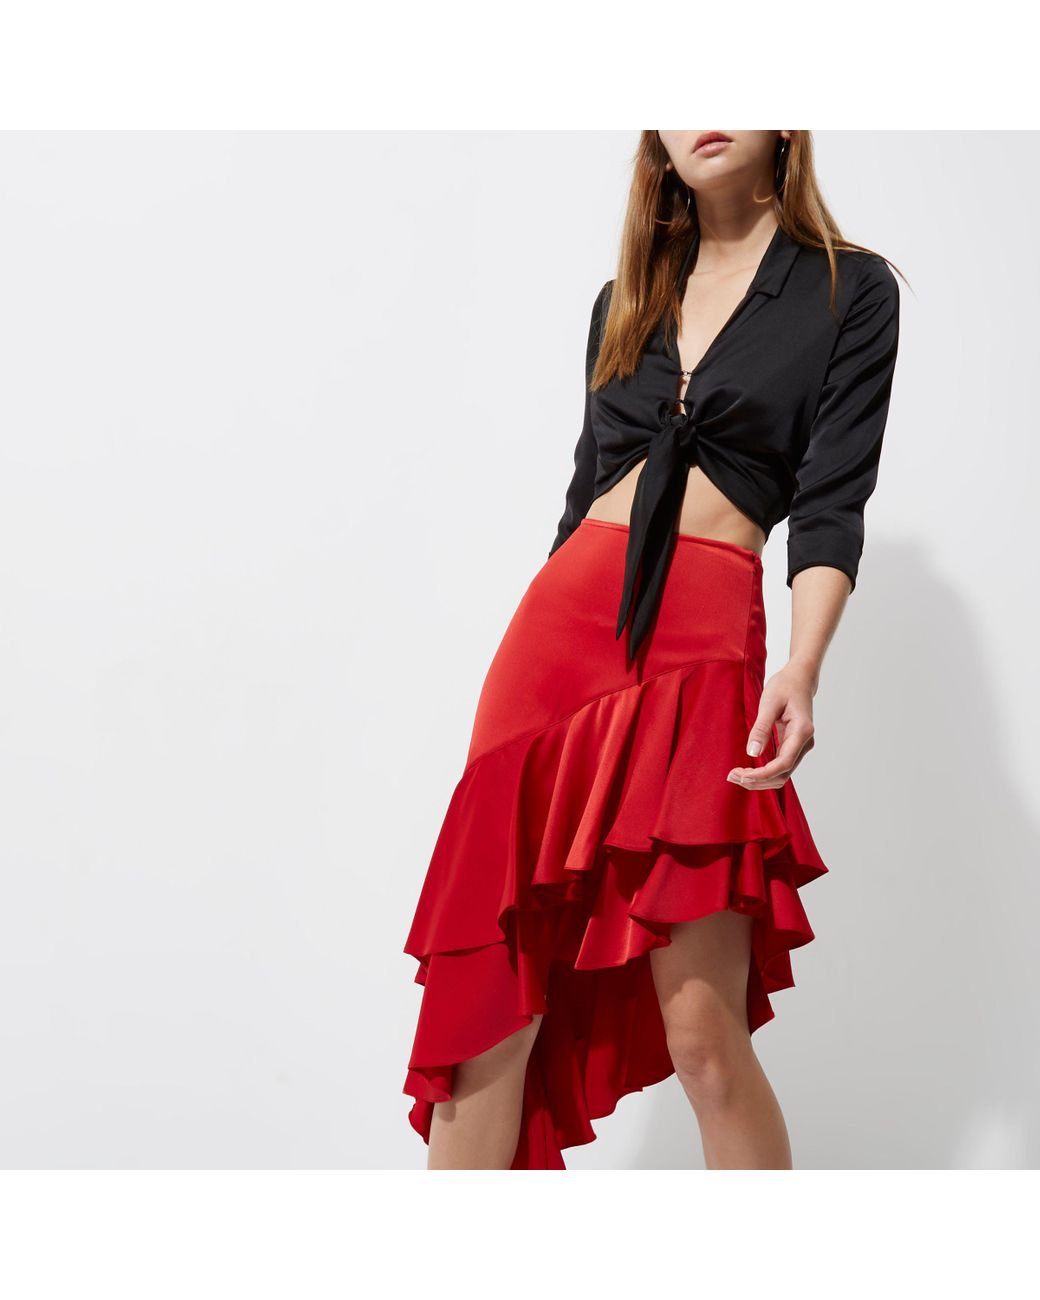 ZARA Red Gingham Skirt - Asymmetrical Ruffle hem skirt | Red gingham skirt,  Gingham skirt, Ruffle hem skirt